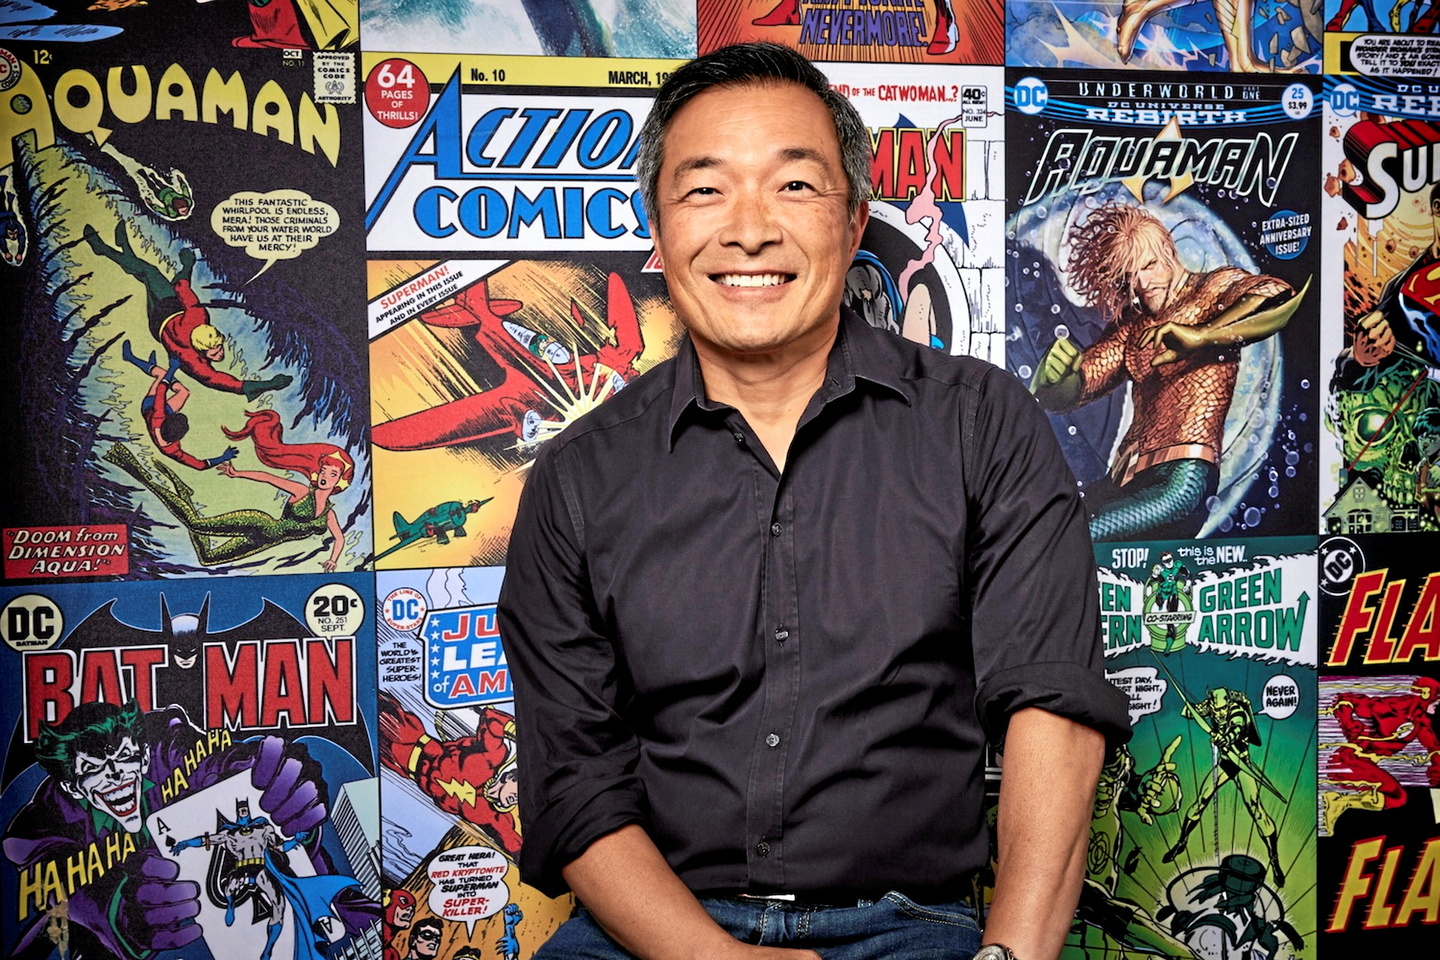 jim lee, président de dc comics : « il y a sûrement trop de contenus superhéroïques aujourd’hui »